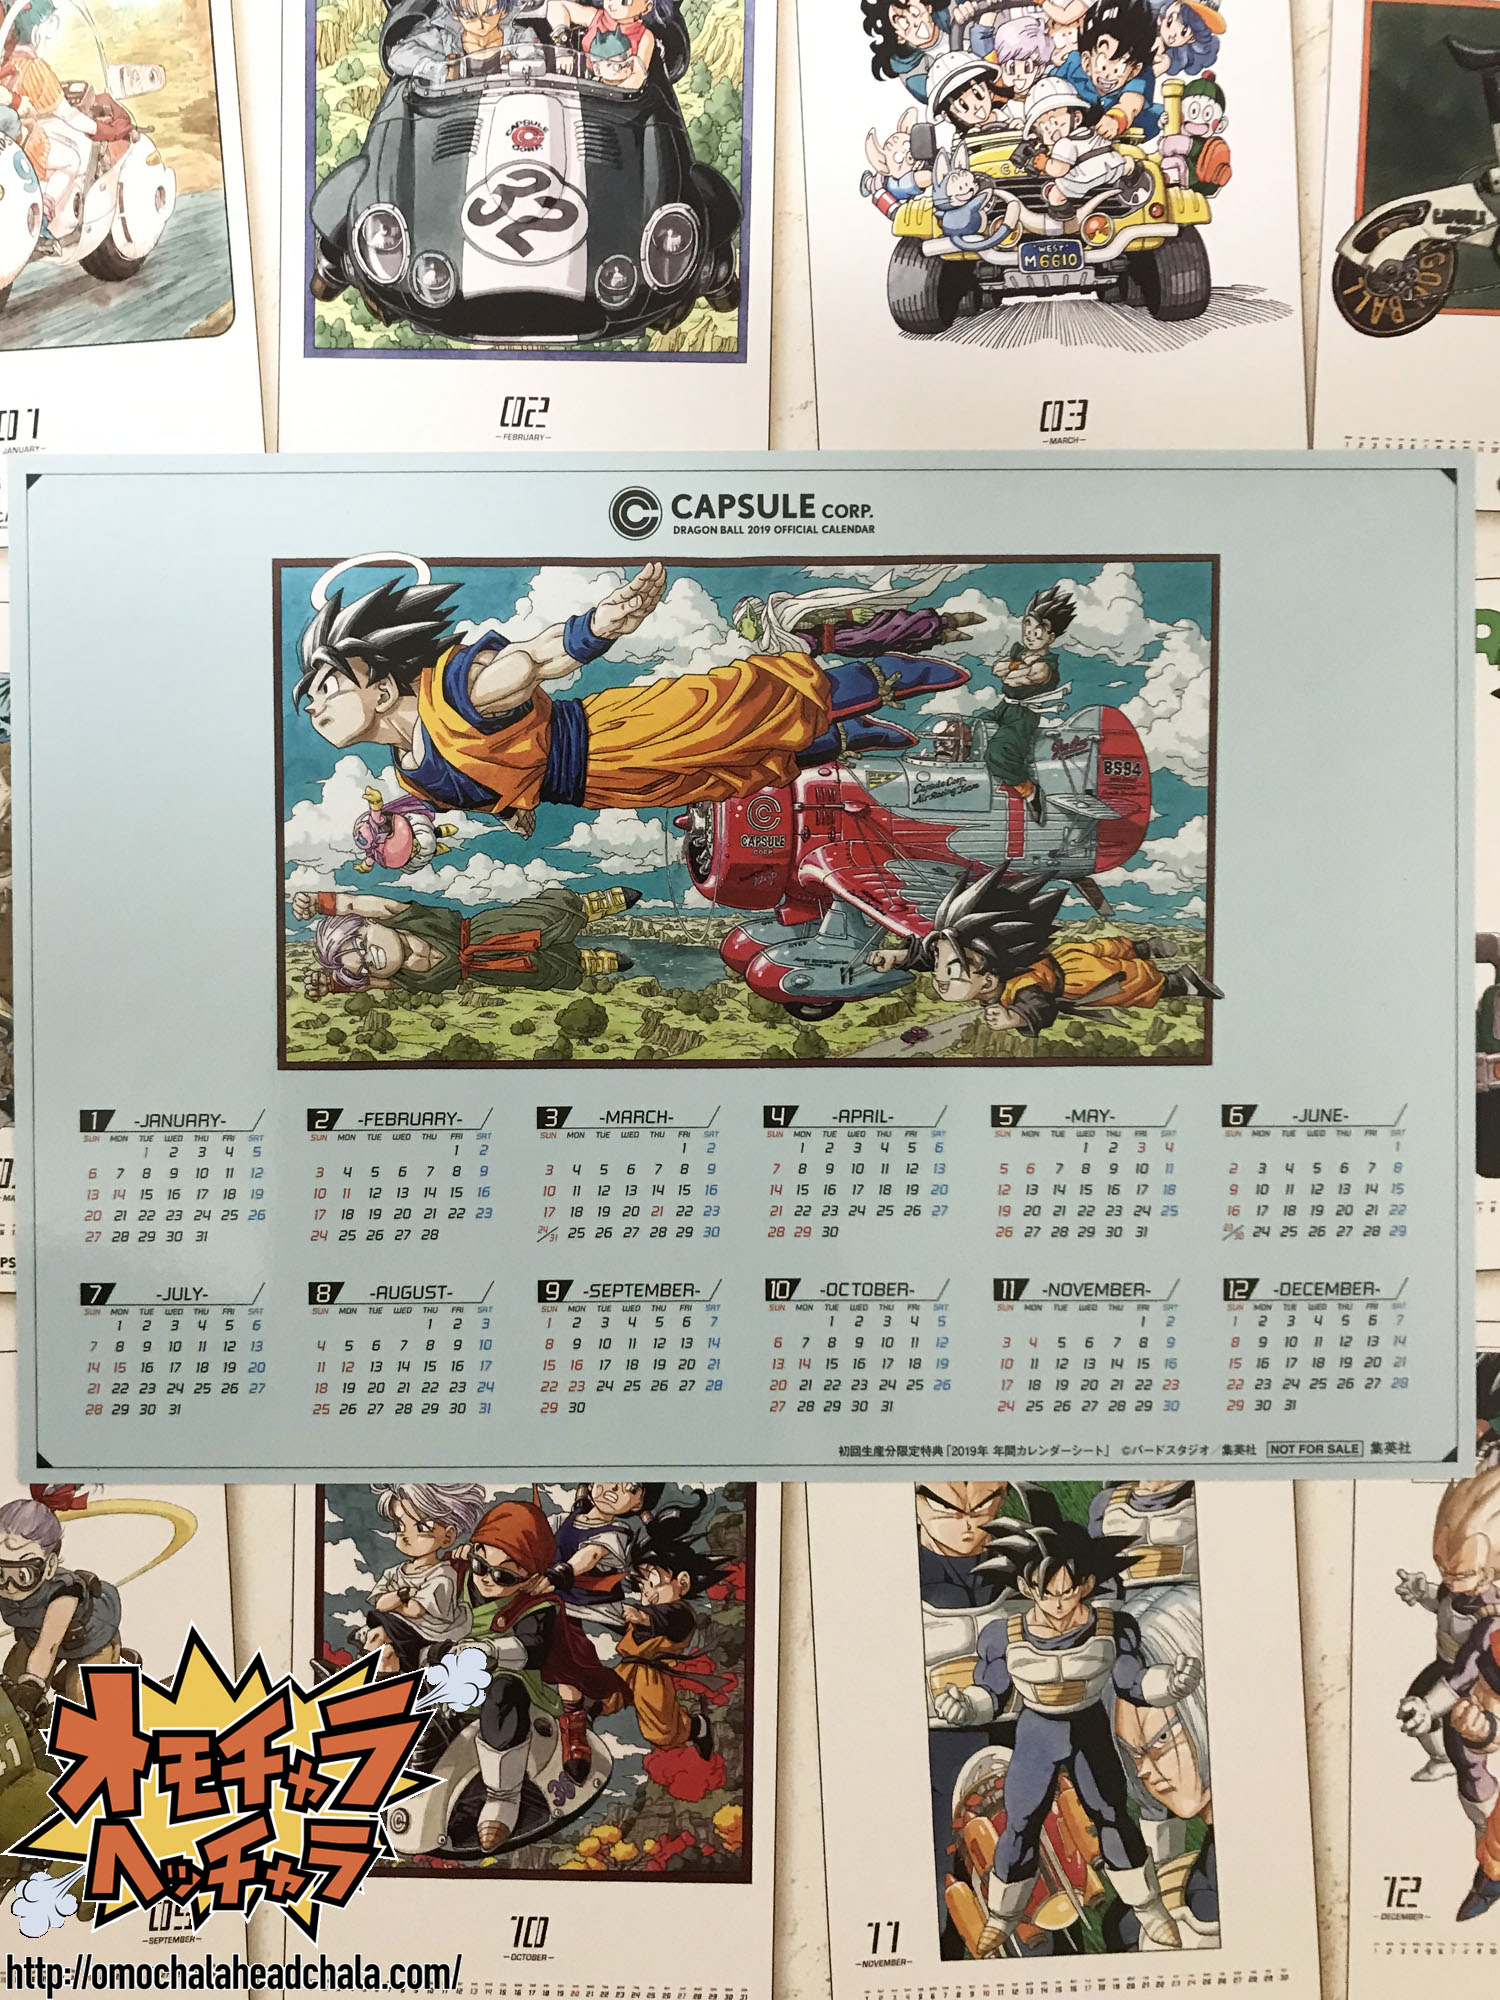 ドラゴンボールコミックカレンダー19が超絶オススメな件 鳥山明先生が描いたハイセンスイラストがイッパイです オモチャラヘッチャラ ドラゴンボール最新情報 フィギュアレビューブログ サイト